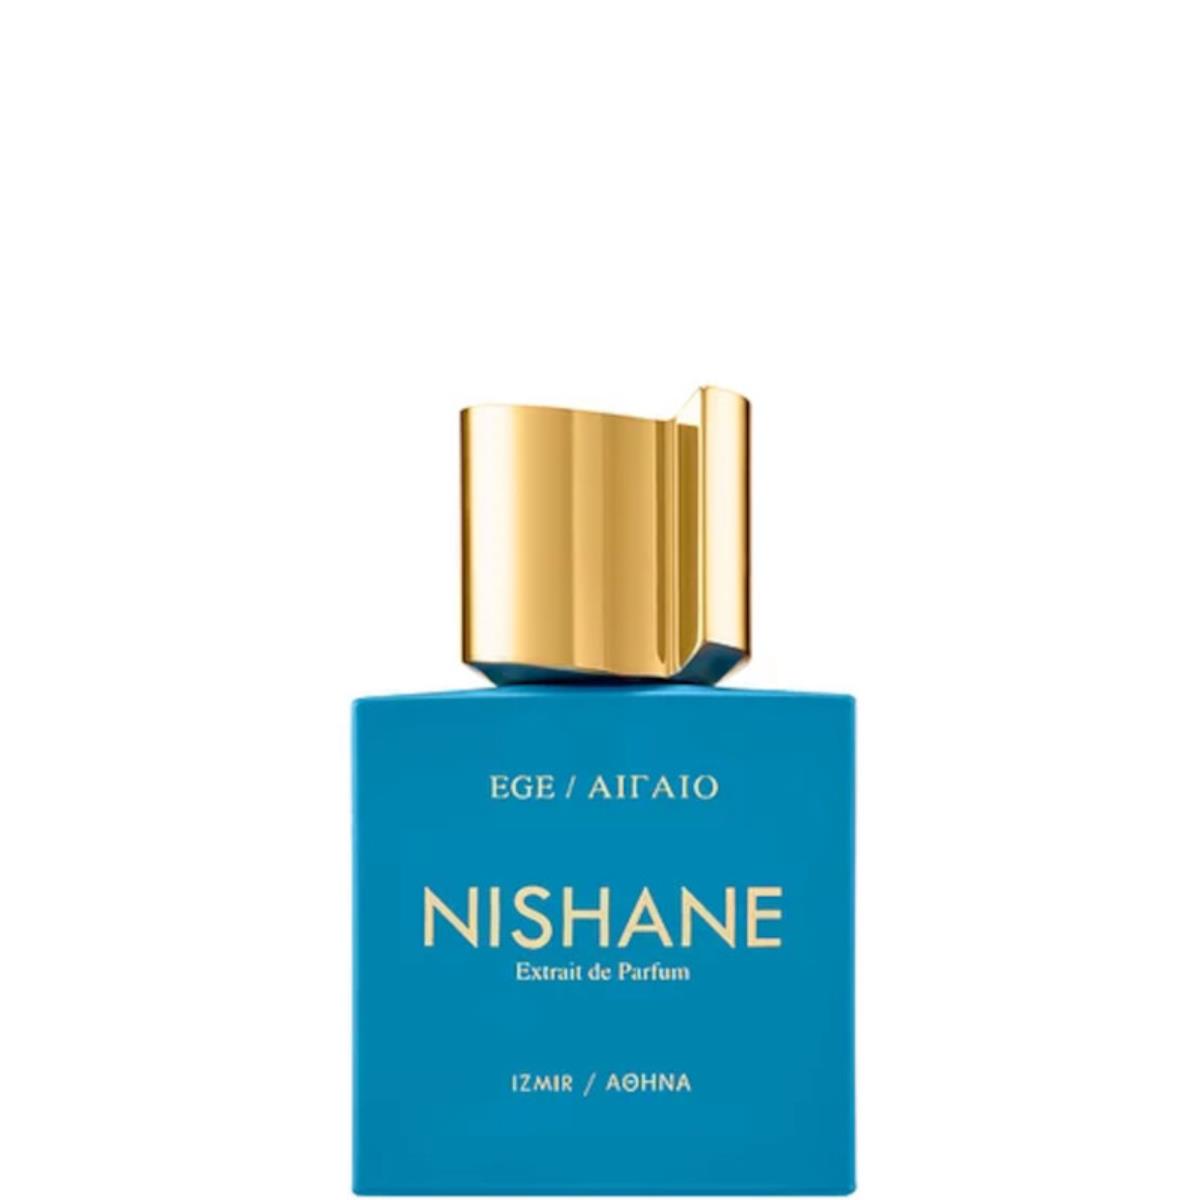 NISHANE EGE EGE EXTRAIT 50 MLEge di Nishane è un profumo fresco ispirato alla brezza marina che trasporta con se gli aromi della costa mediterranea. Deliziosamente croccante, questo acquatico straordinariamente aromatico cattura davvero lo straordinario b